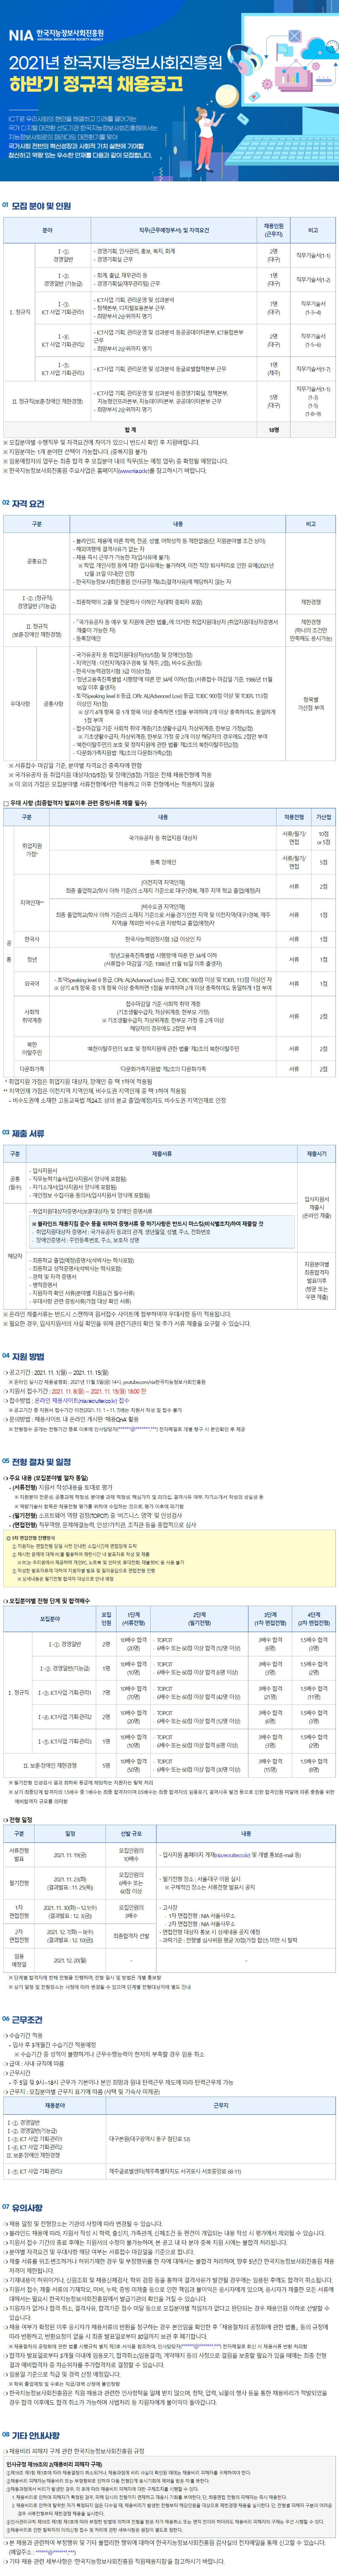 [한국지능정보사회진흥원] 하반기 정규직 채용 (경영, 기획)(~11.15 까지)